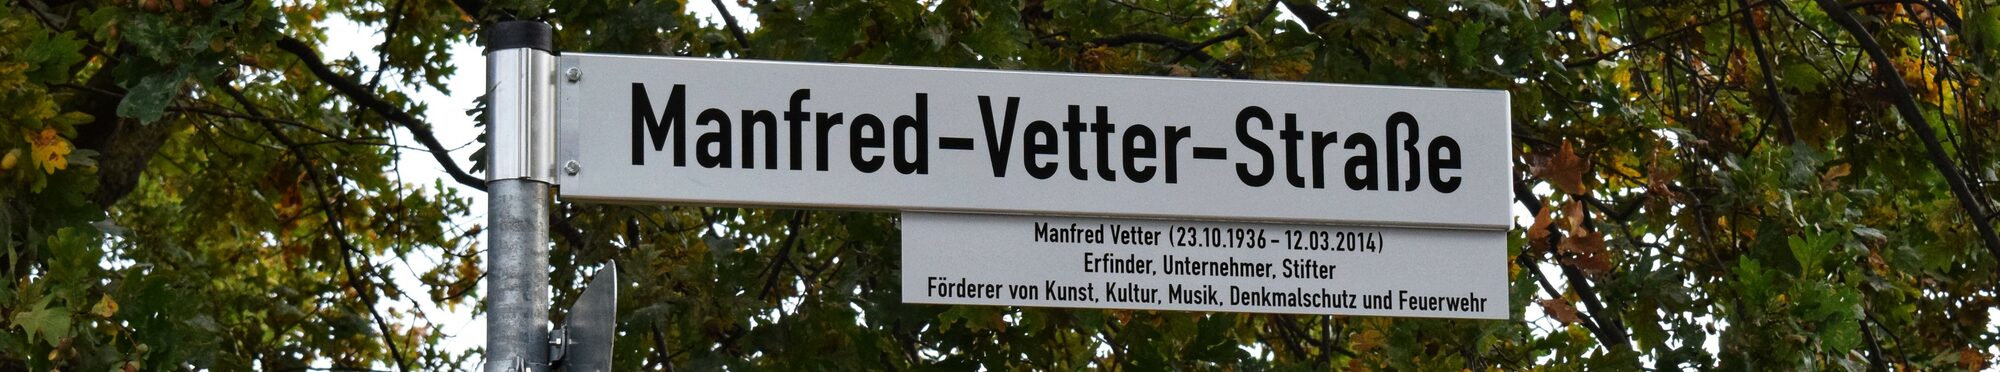 Manfred-Vetter-Straße